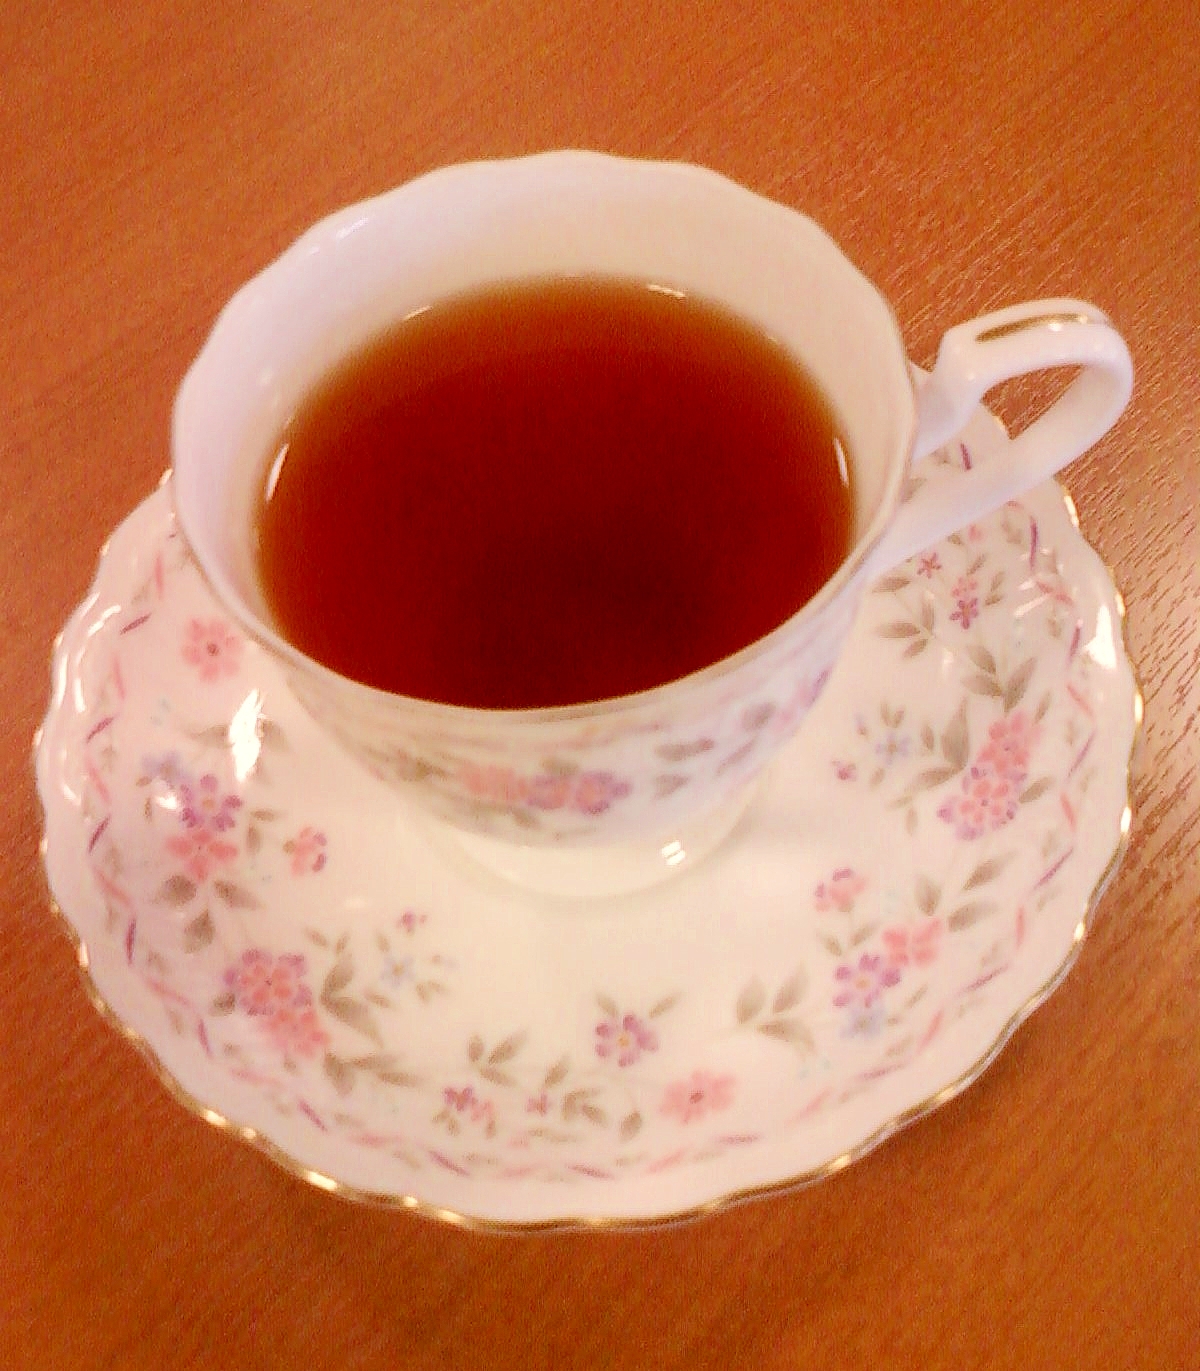 ☆*:・プルーン絞り汁入りほうじ茶ミックス紅茶・☆